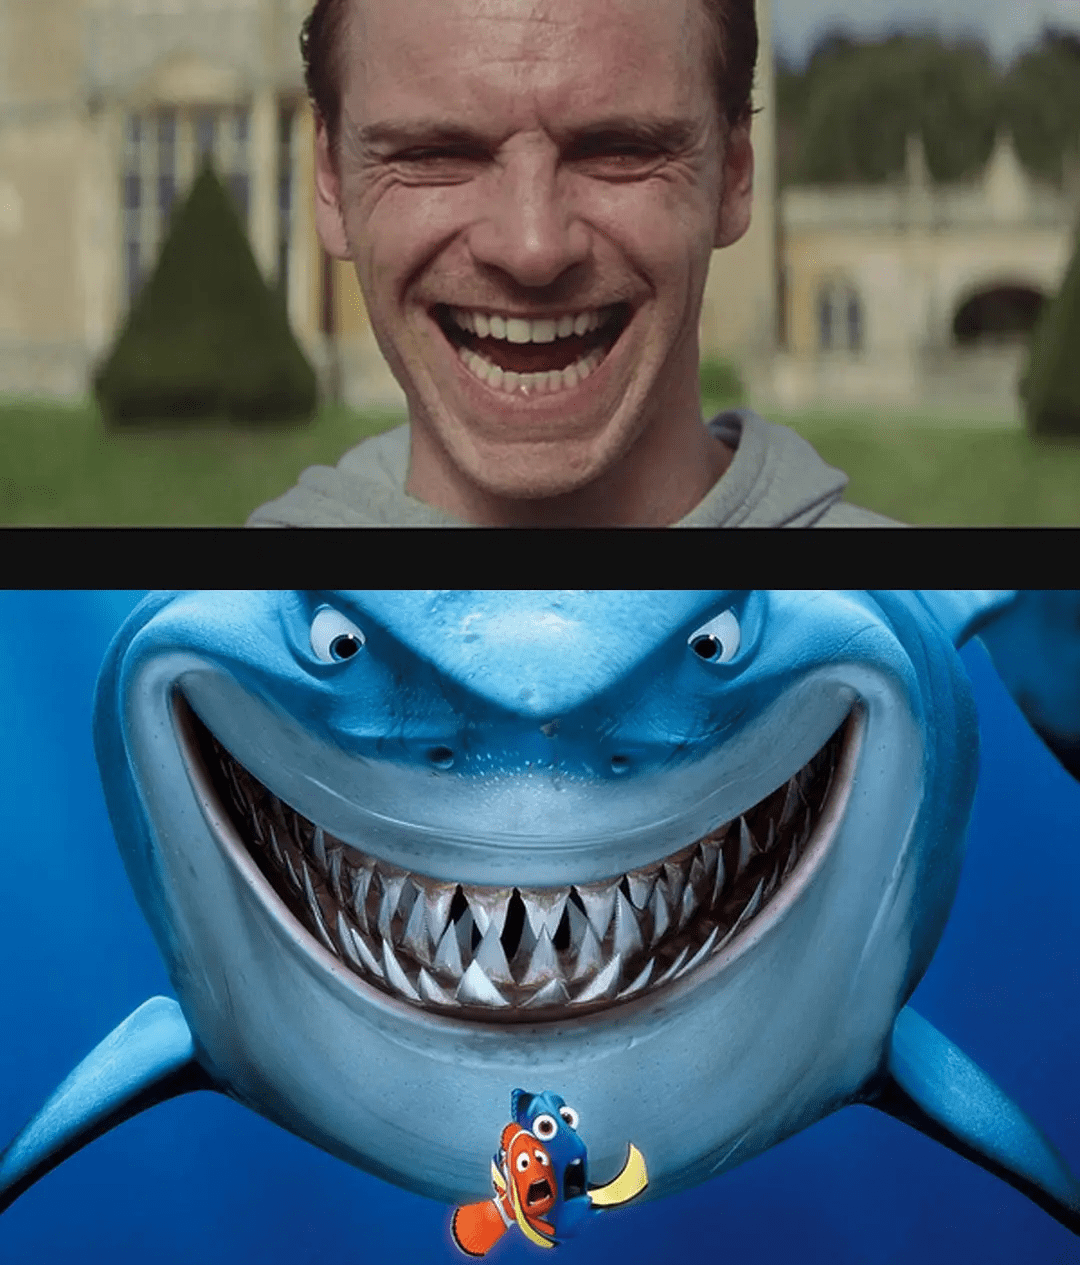 他笑起来就像鲨鱼的脸吃人.是整个德国的荣耀.